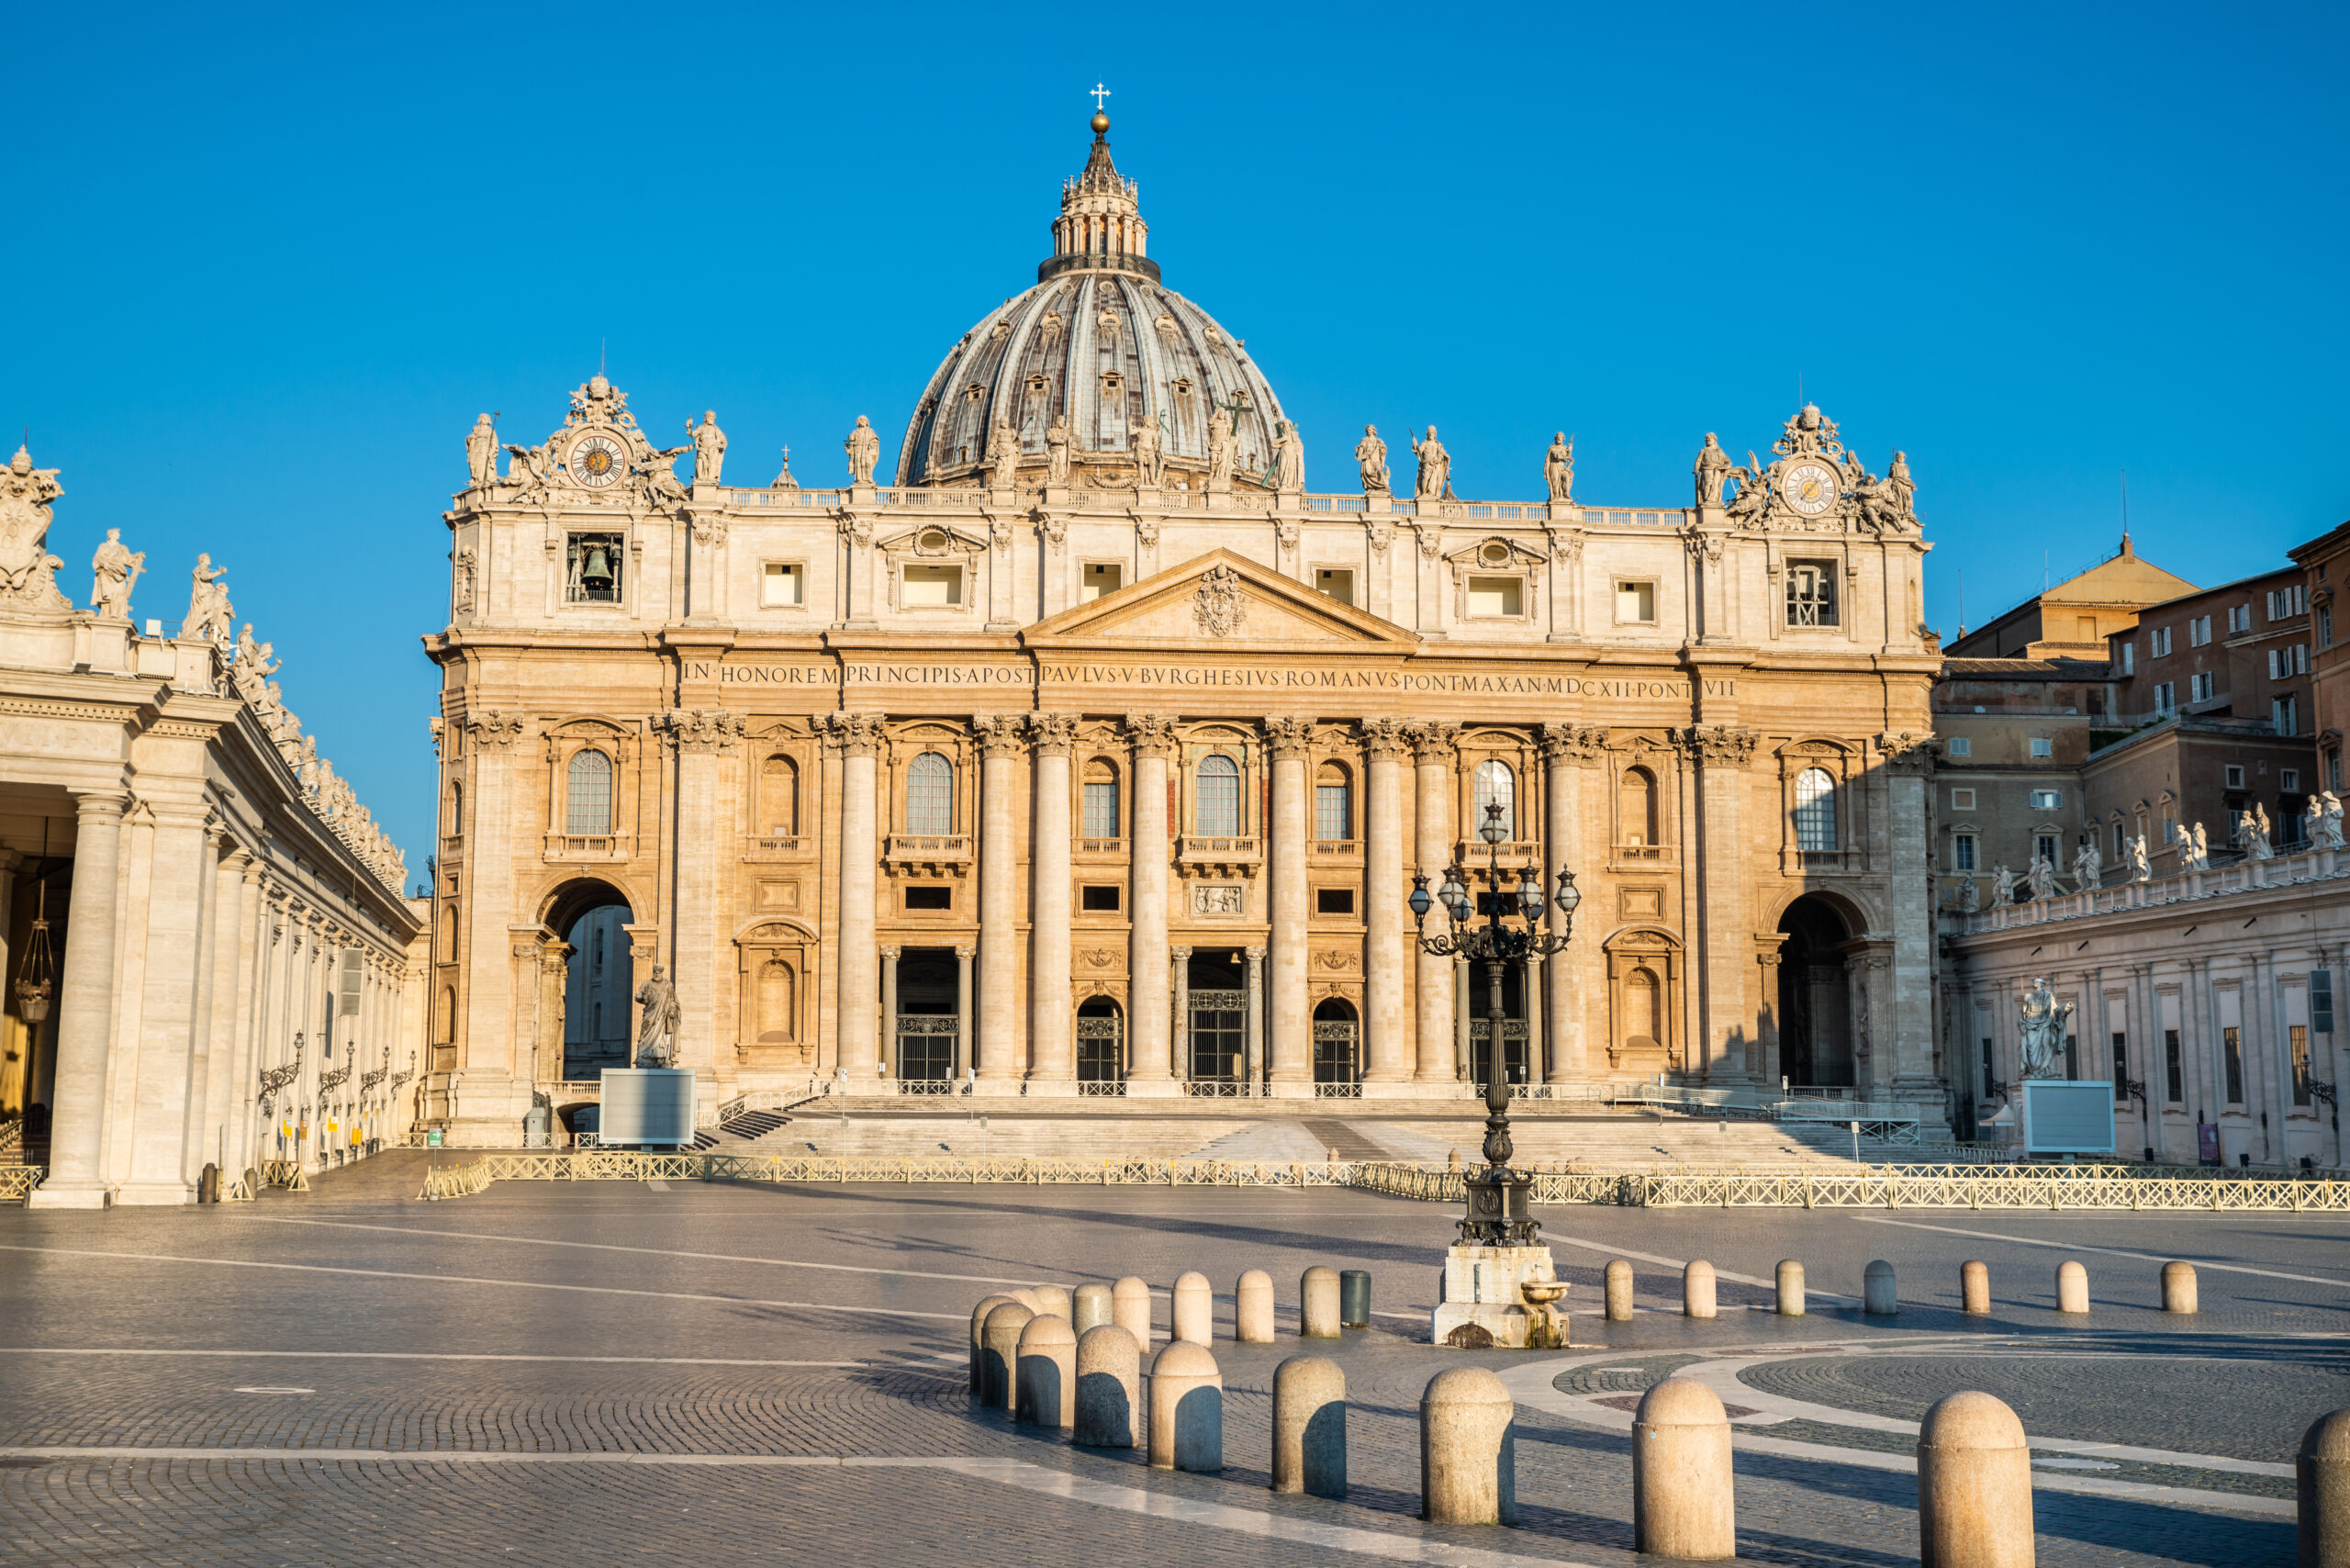 Basílica de São Pedro, no Vaticano (Foto: Adobe Stock)